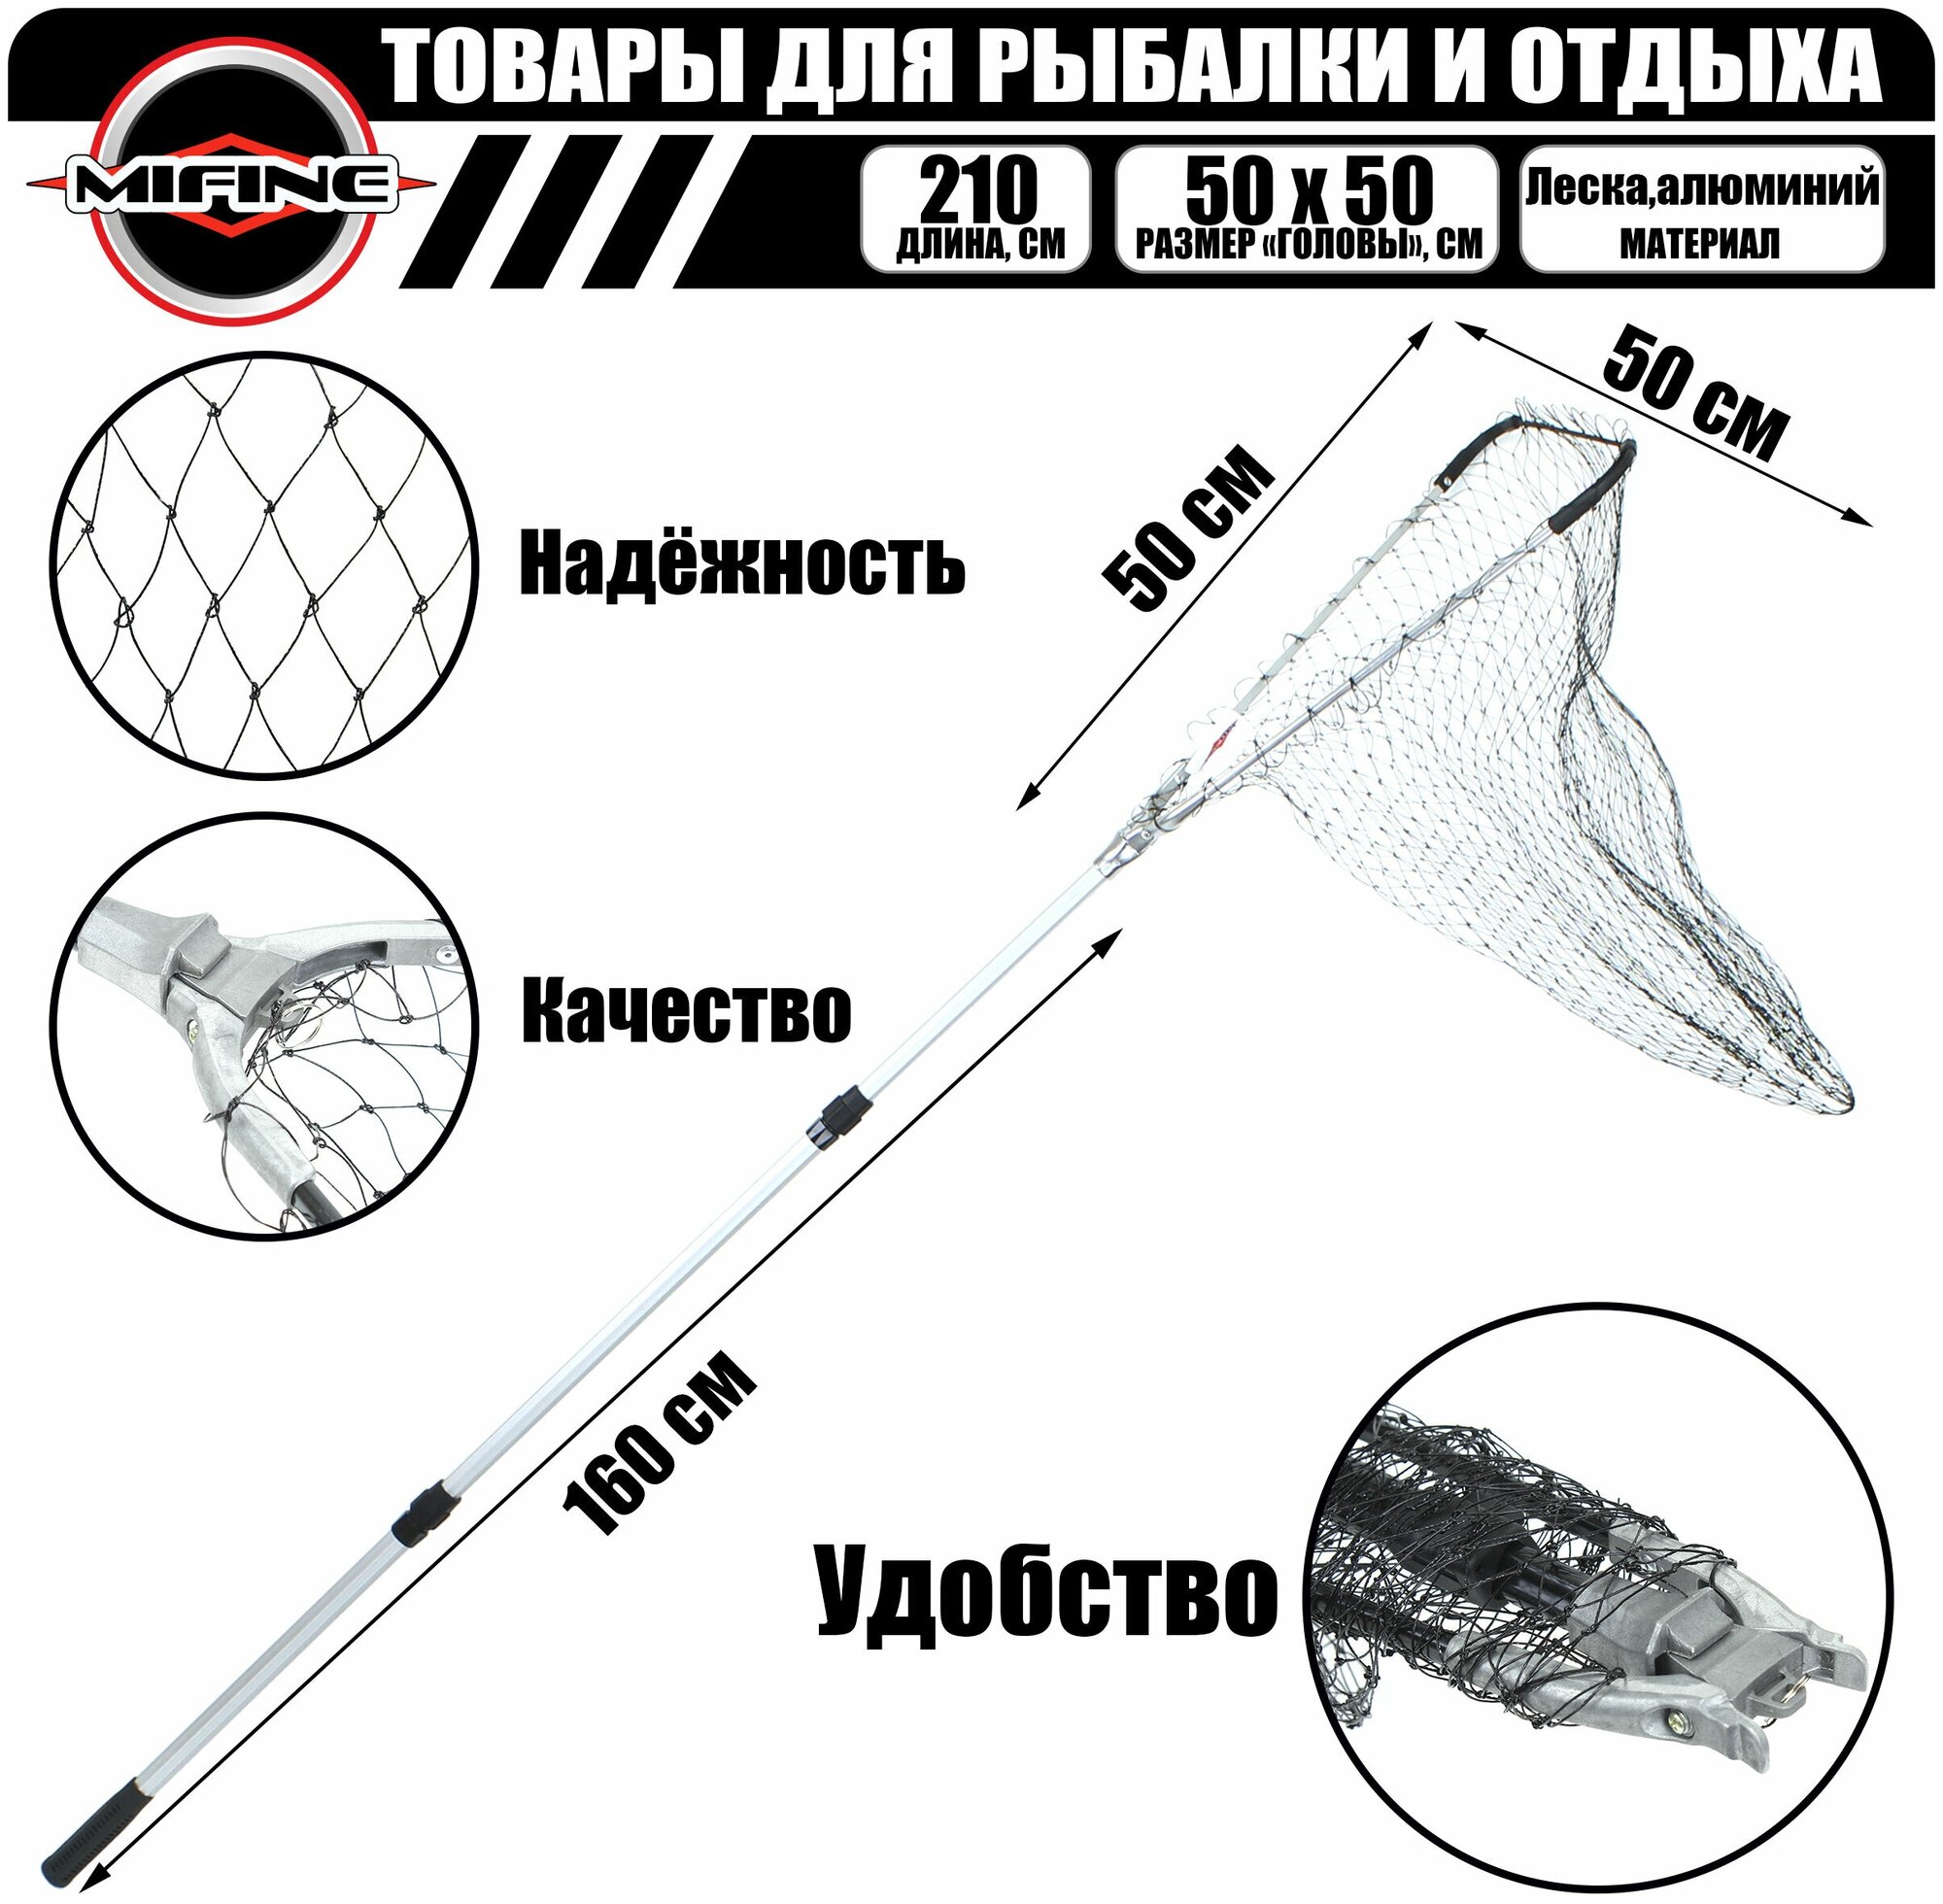 Подсак рыболовный треугольный MIFINE телескопический 16м голова 50см(черная леска)/ подсачек для рыбалки